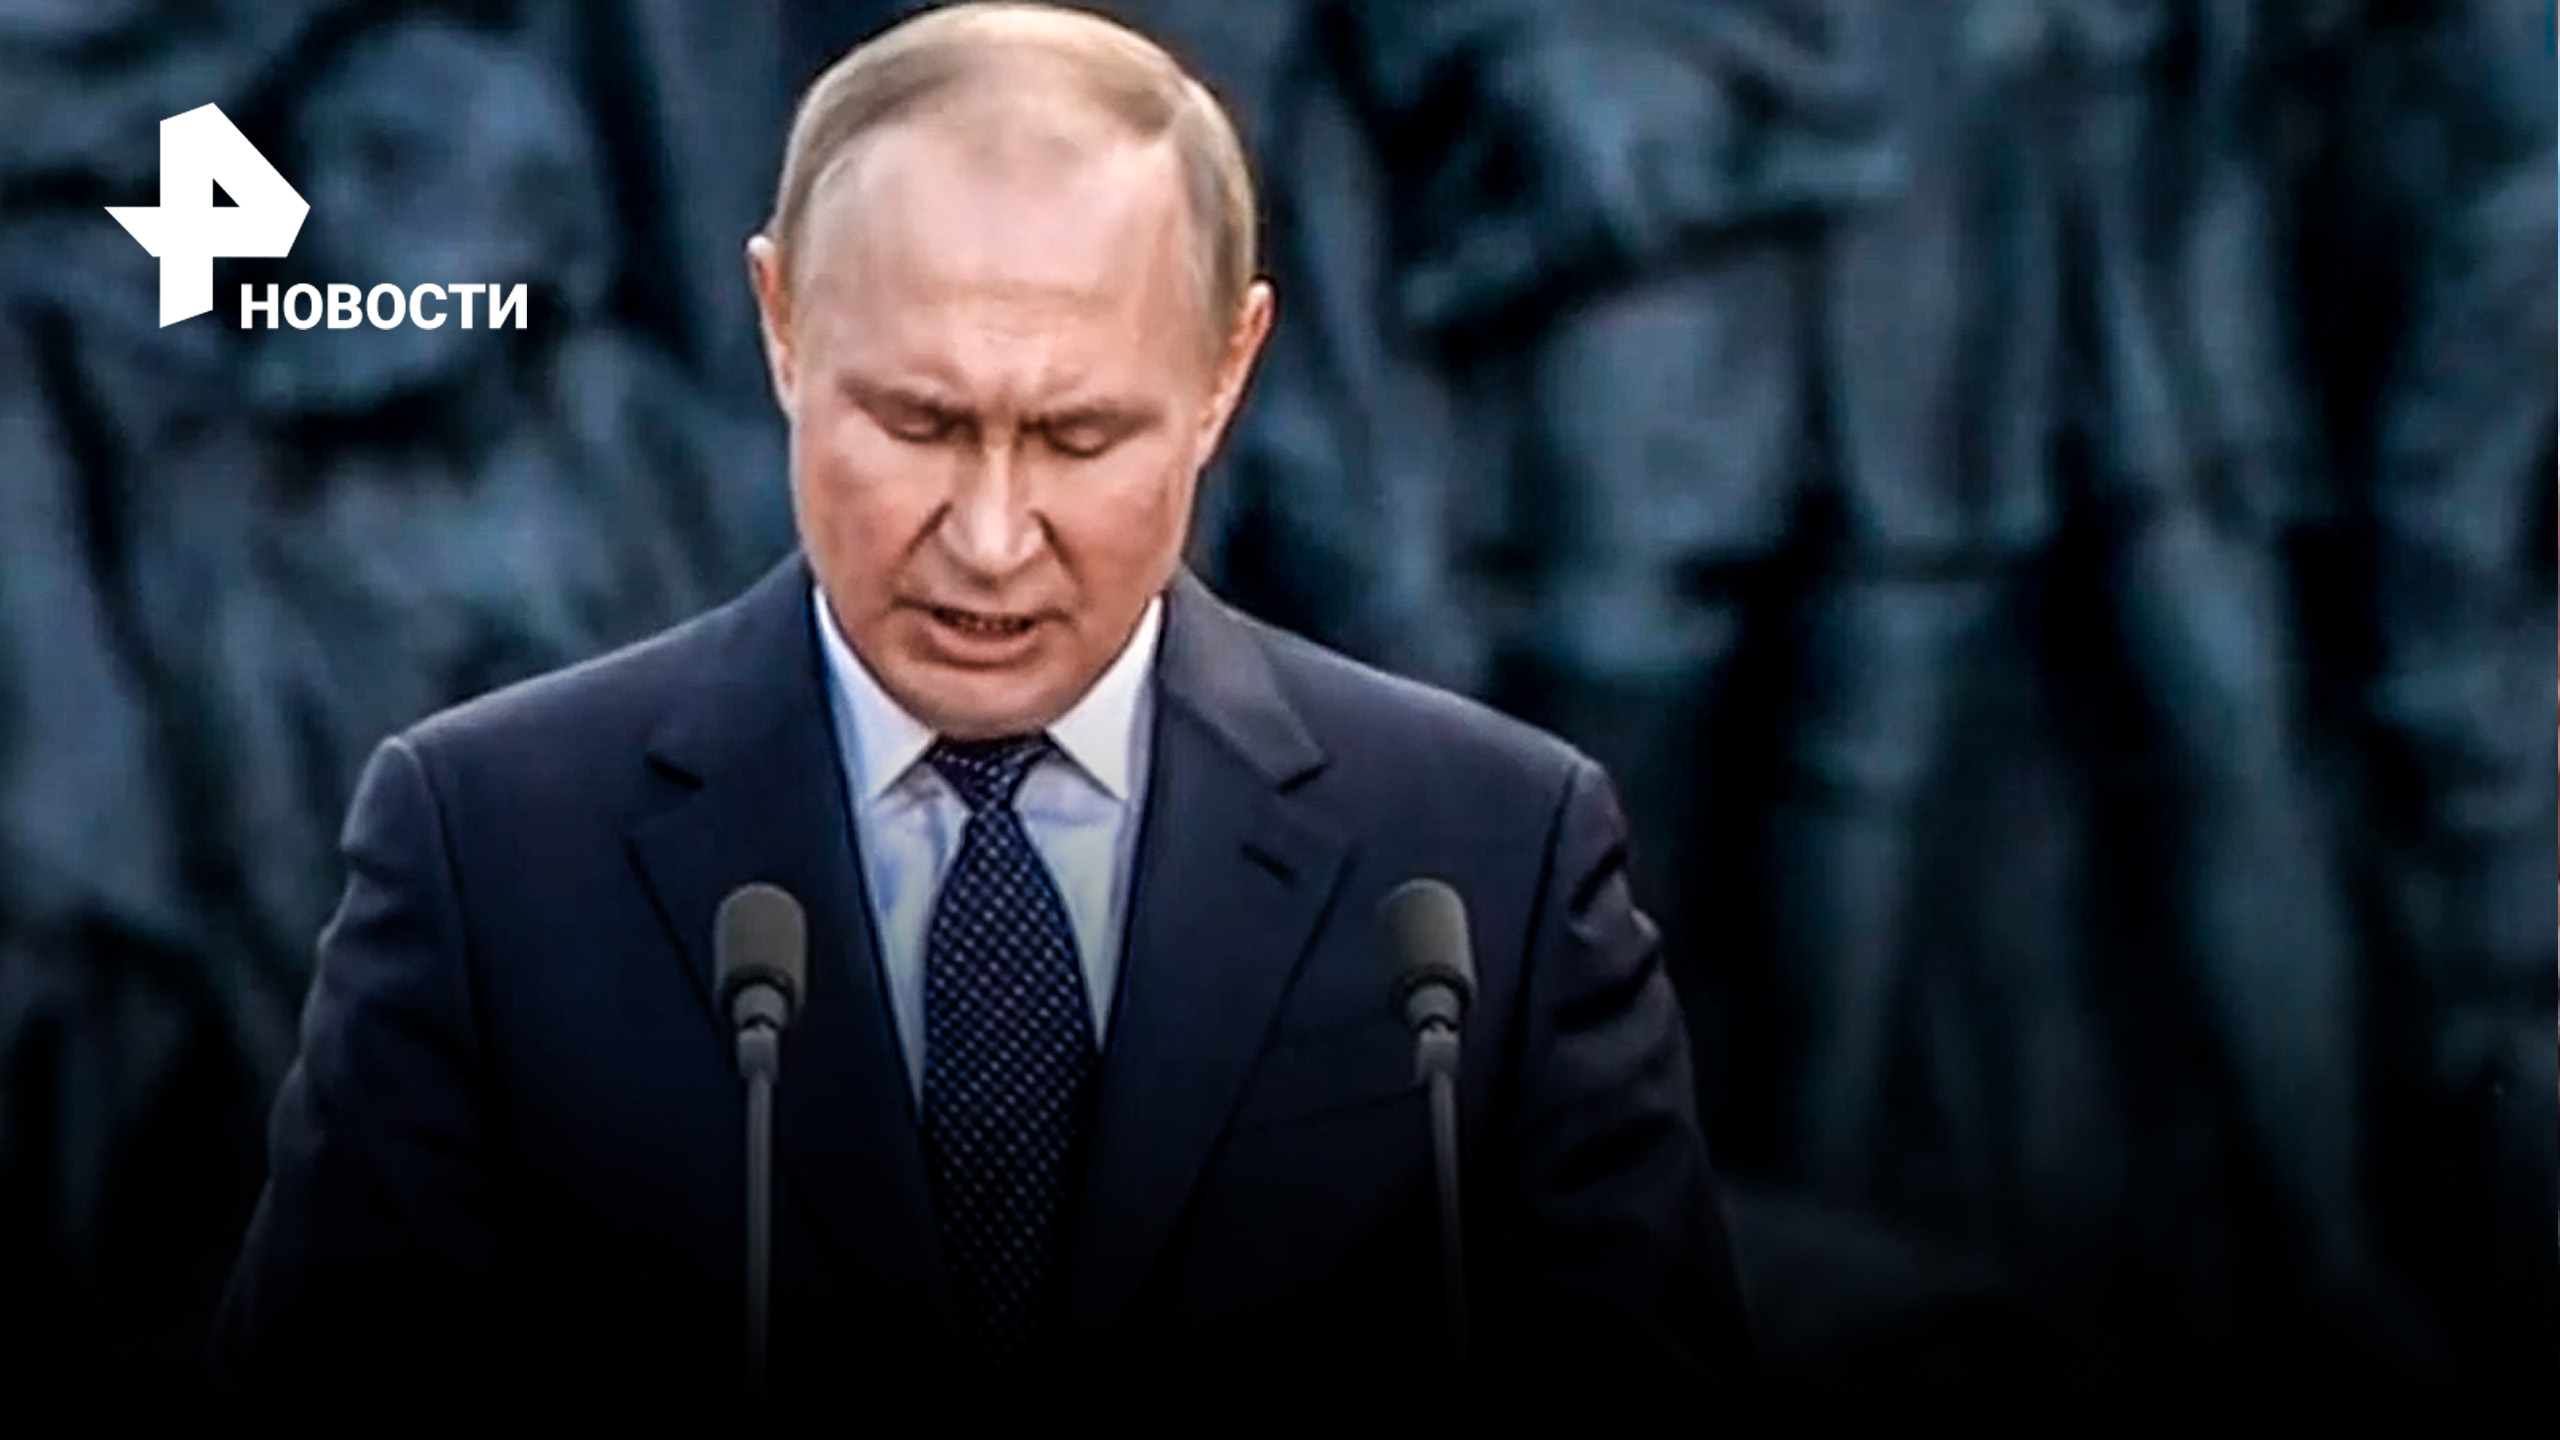 Путин: для России смертельно опасно ослабить свой суверенитет, подобных ошибок больше не будет